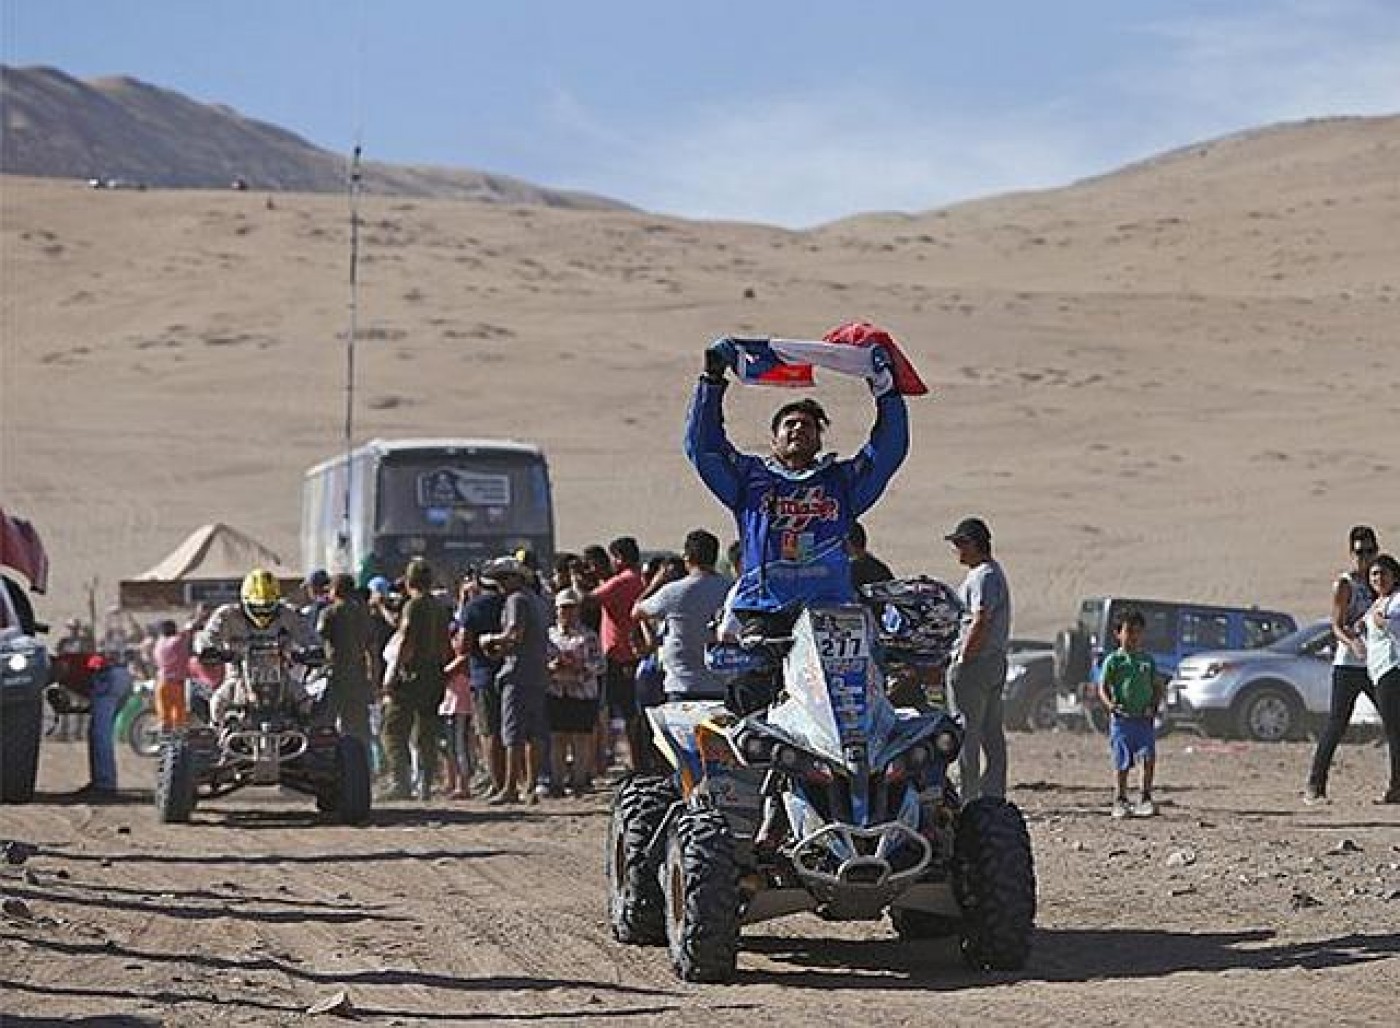 Raliul Dakar 2015: A 4-a etapa